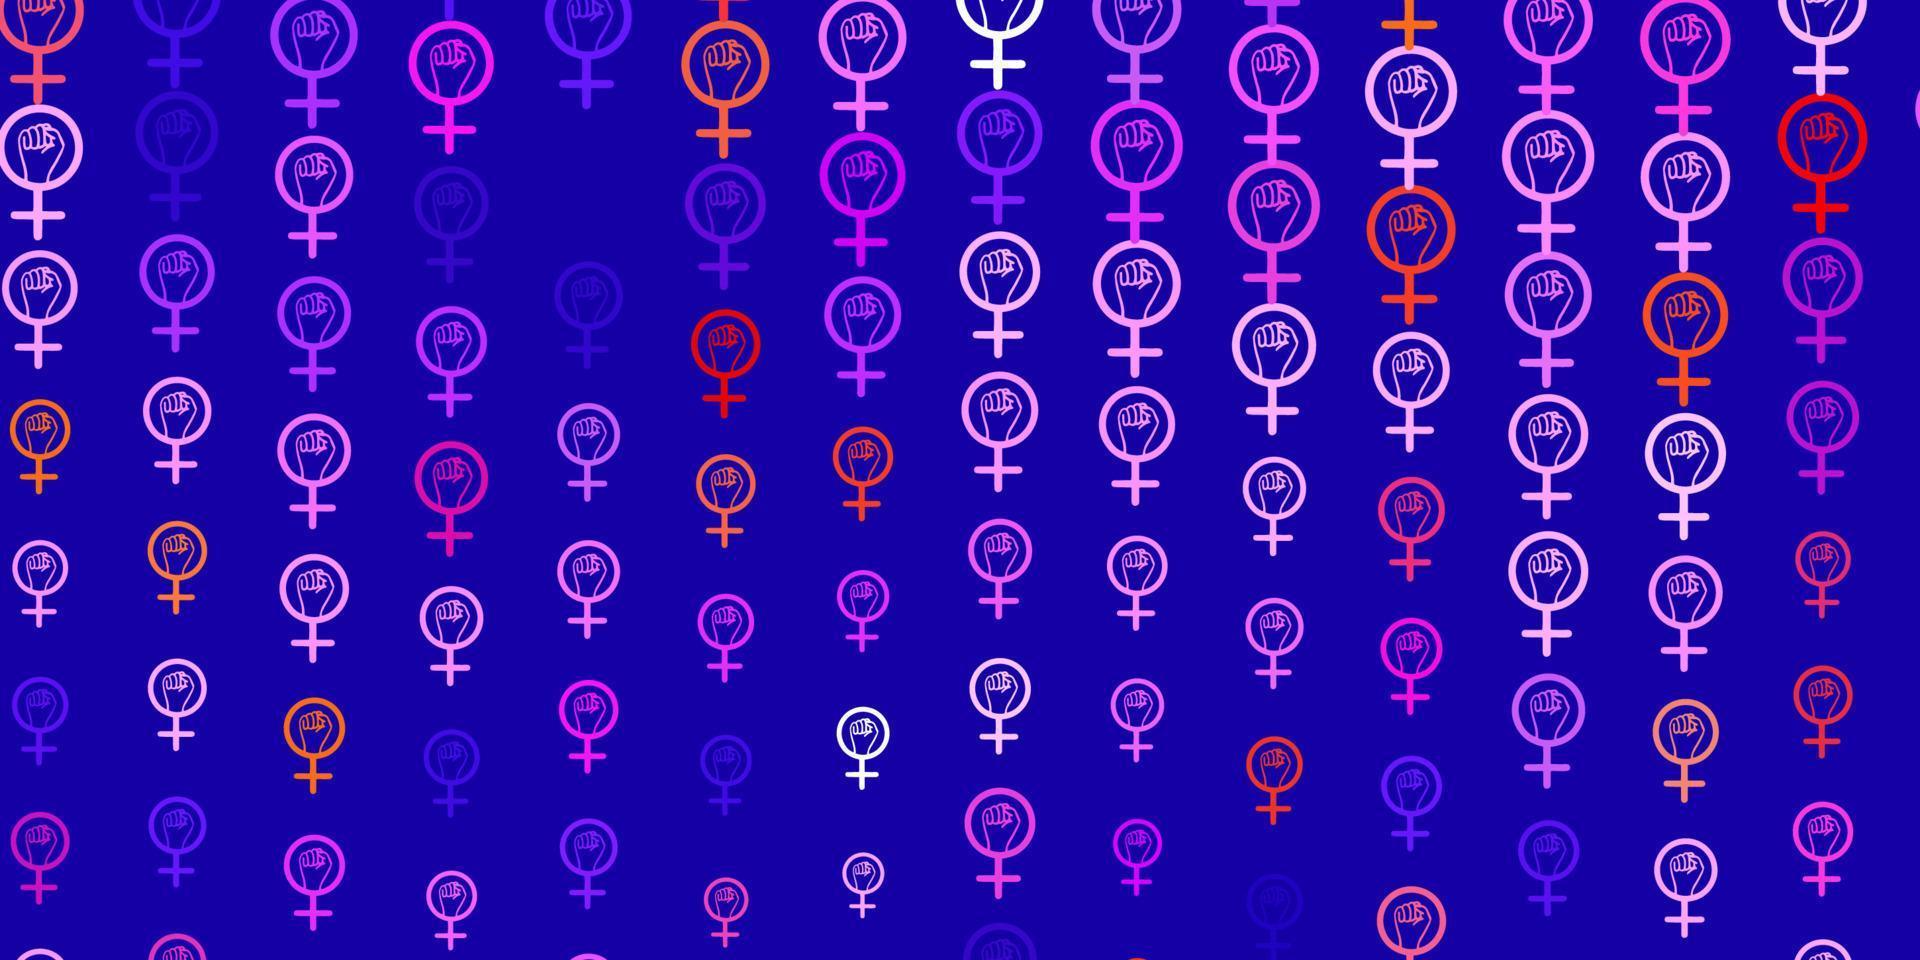 modèle vectoriel bleu clair, rouge avec des éléments de féminisme.